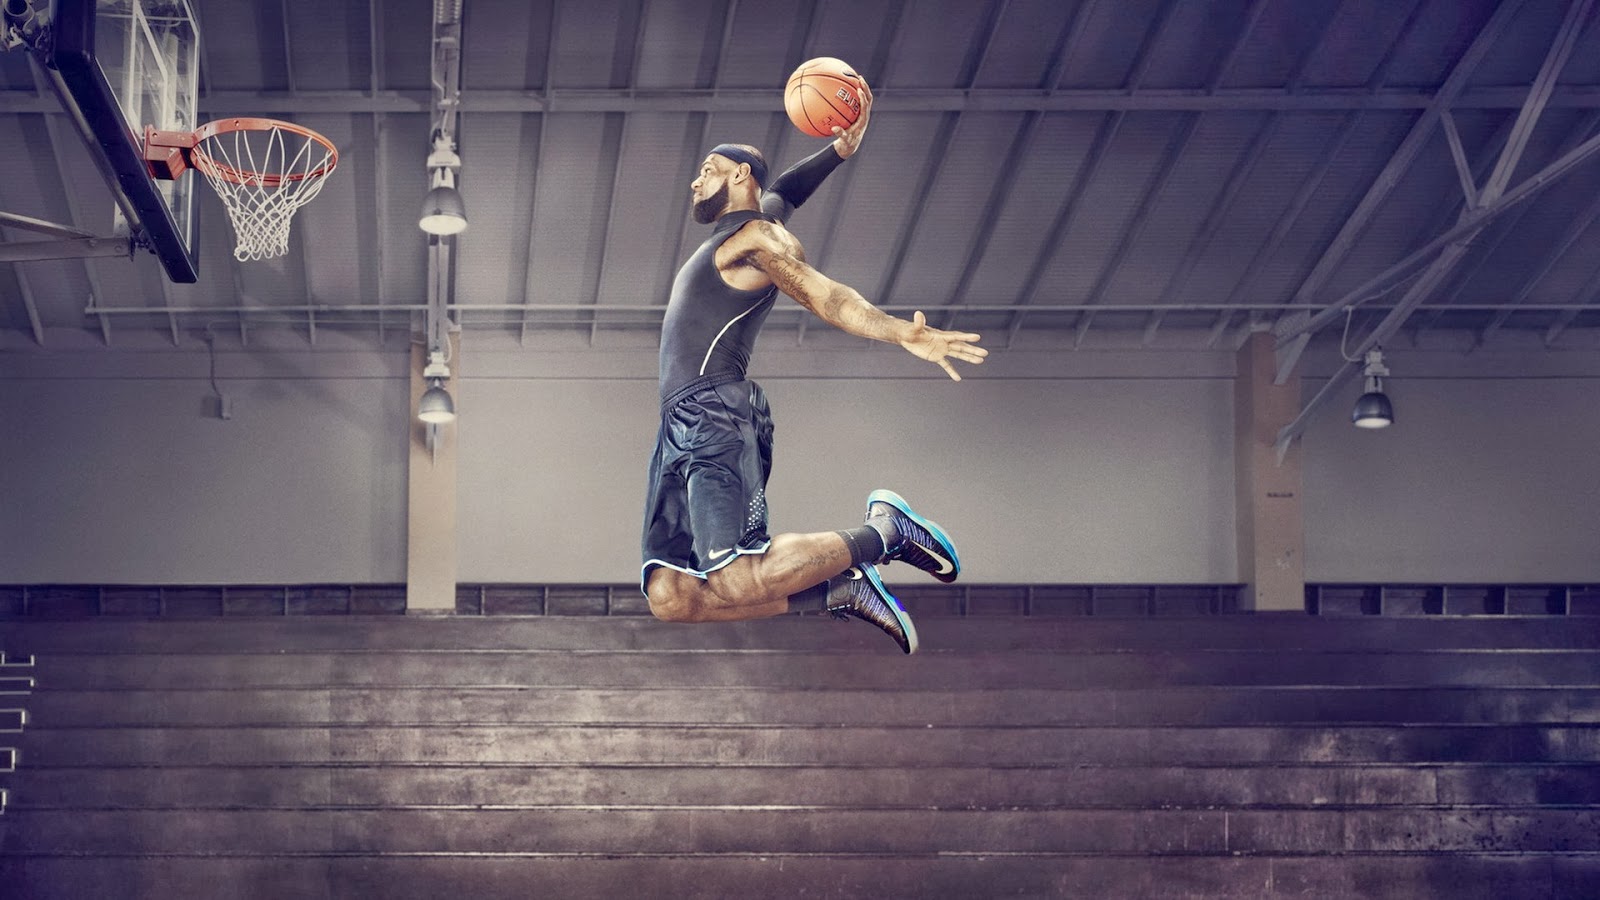 nouveau fond d'écran 2014,mouvements de basket ball,joueur de basketball,basketball,football freestyle,slam dunk